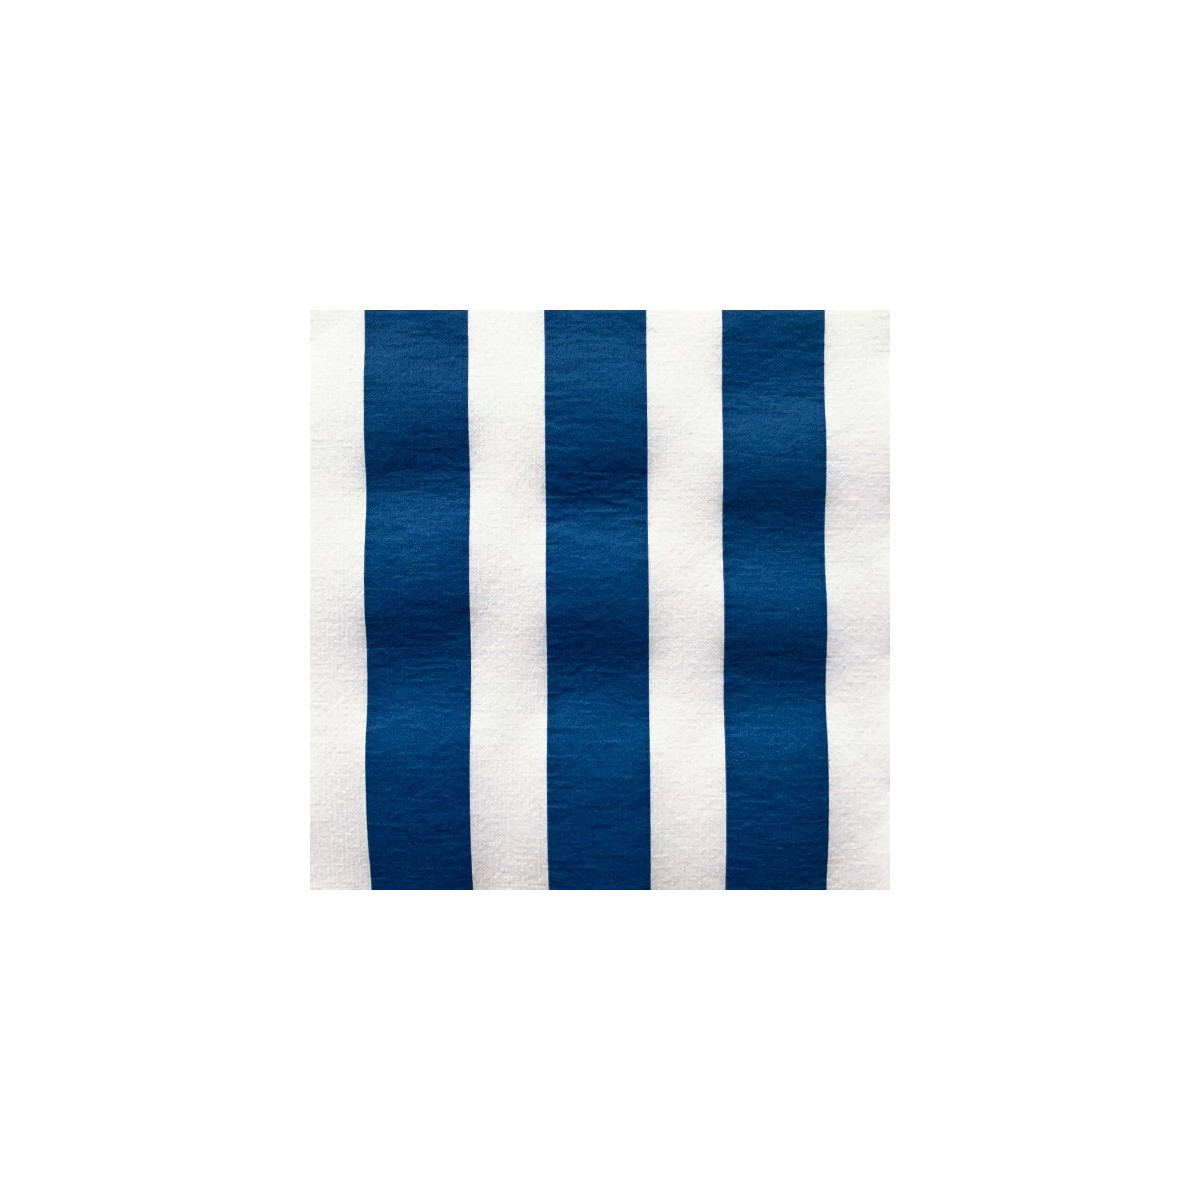 20 Serviettes rayées bleu marine - 40 x 40 cm